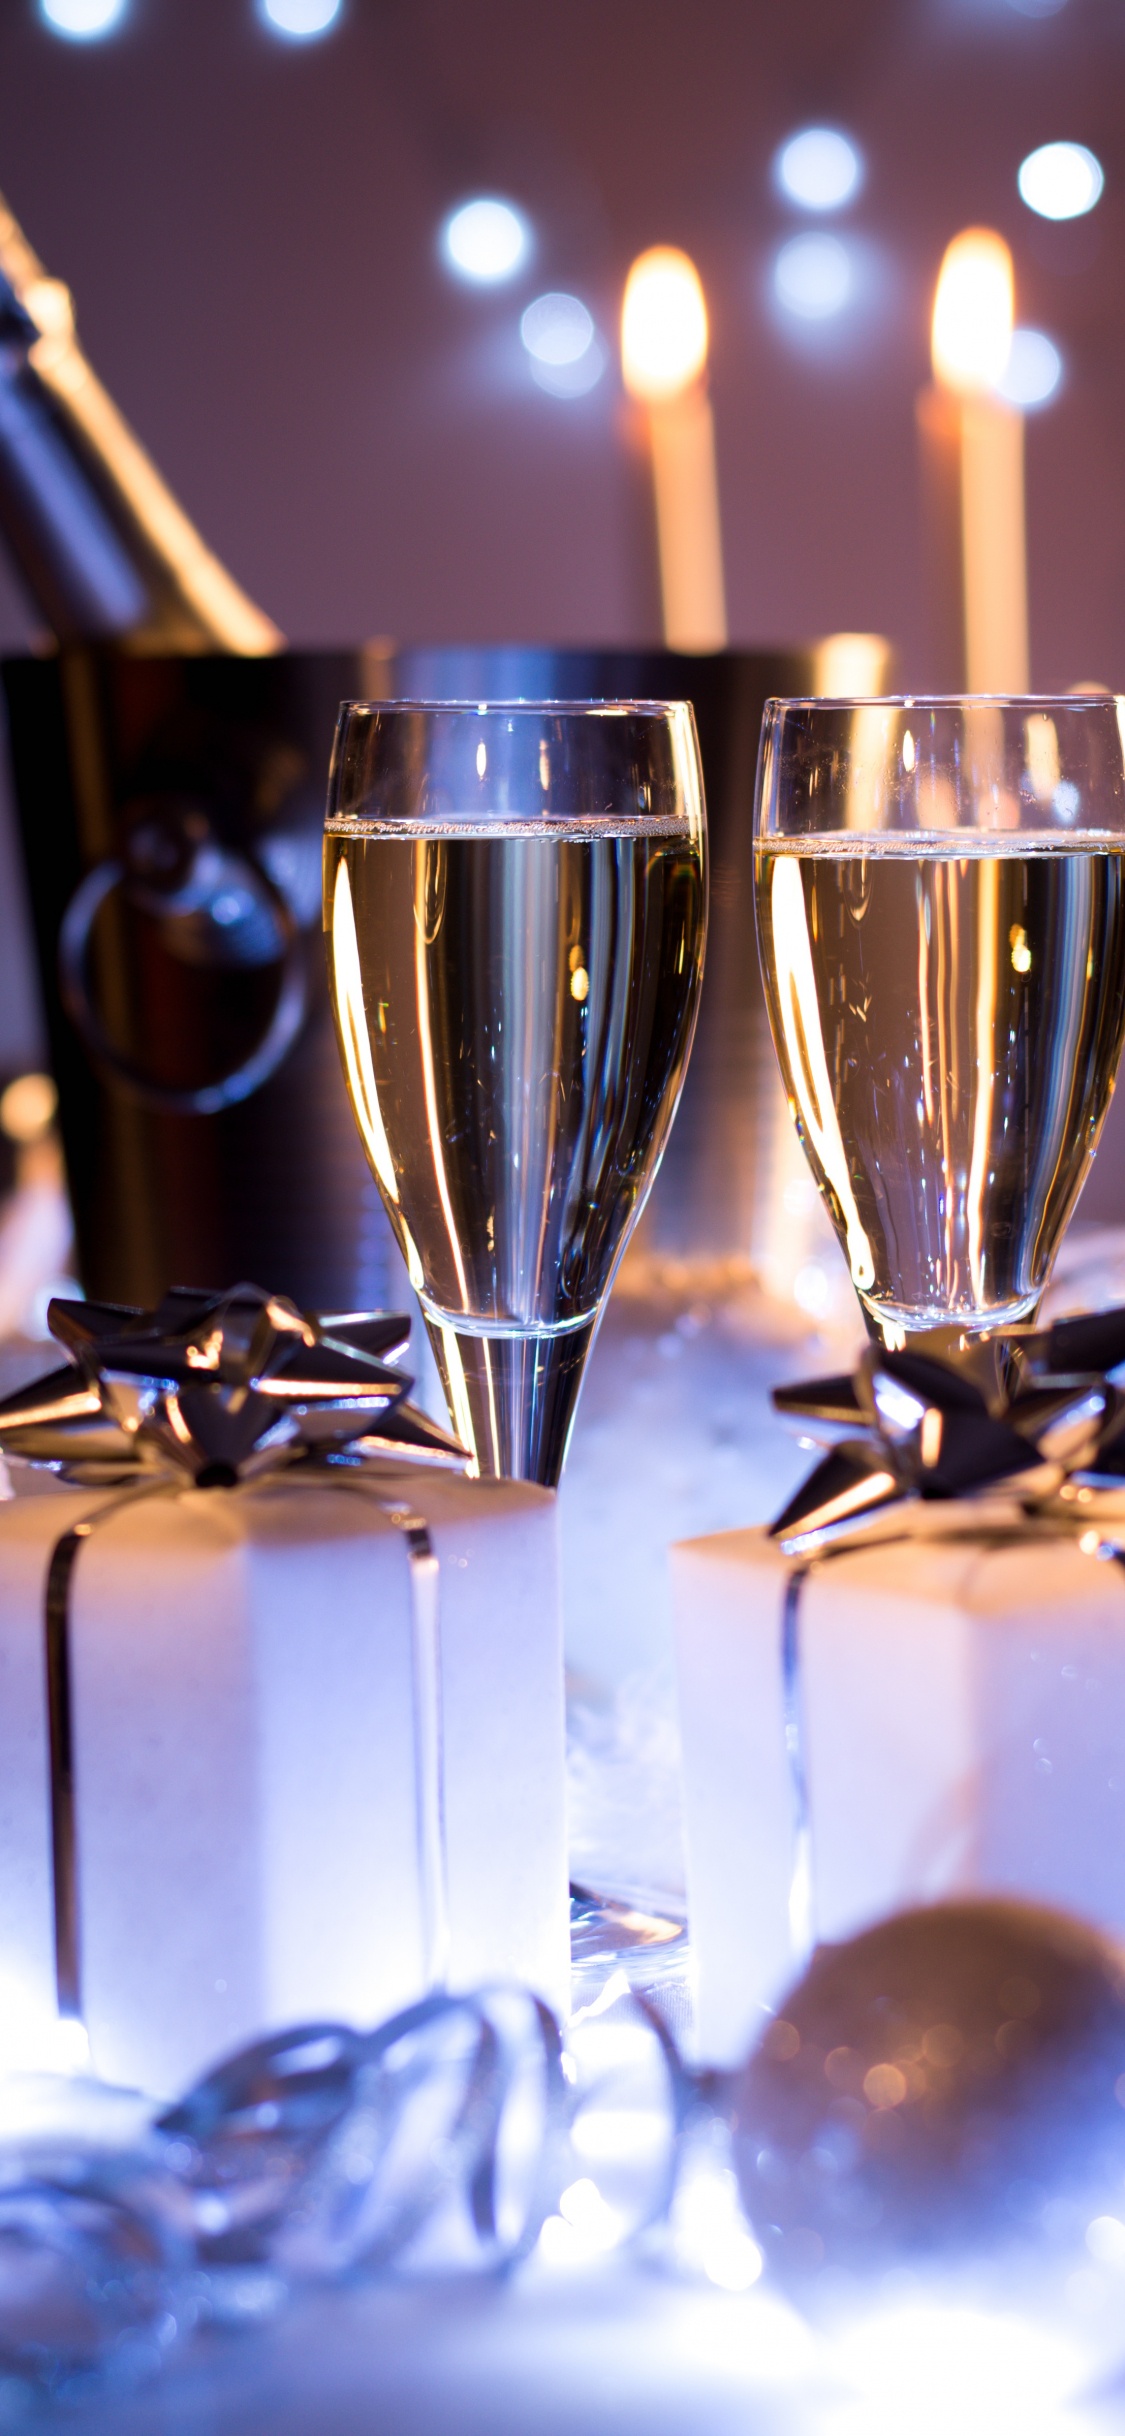 香槟, 葡萄酒, 新年前夕, 新的一年, 仍然生活 壁纸 1125x2436 允许